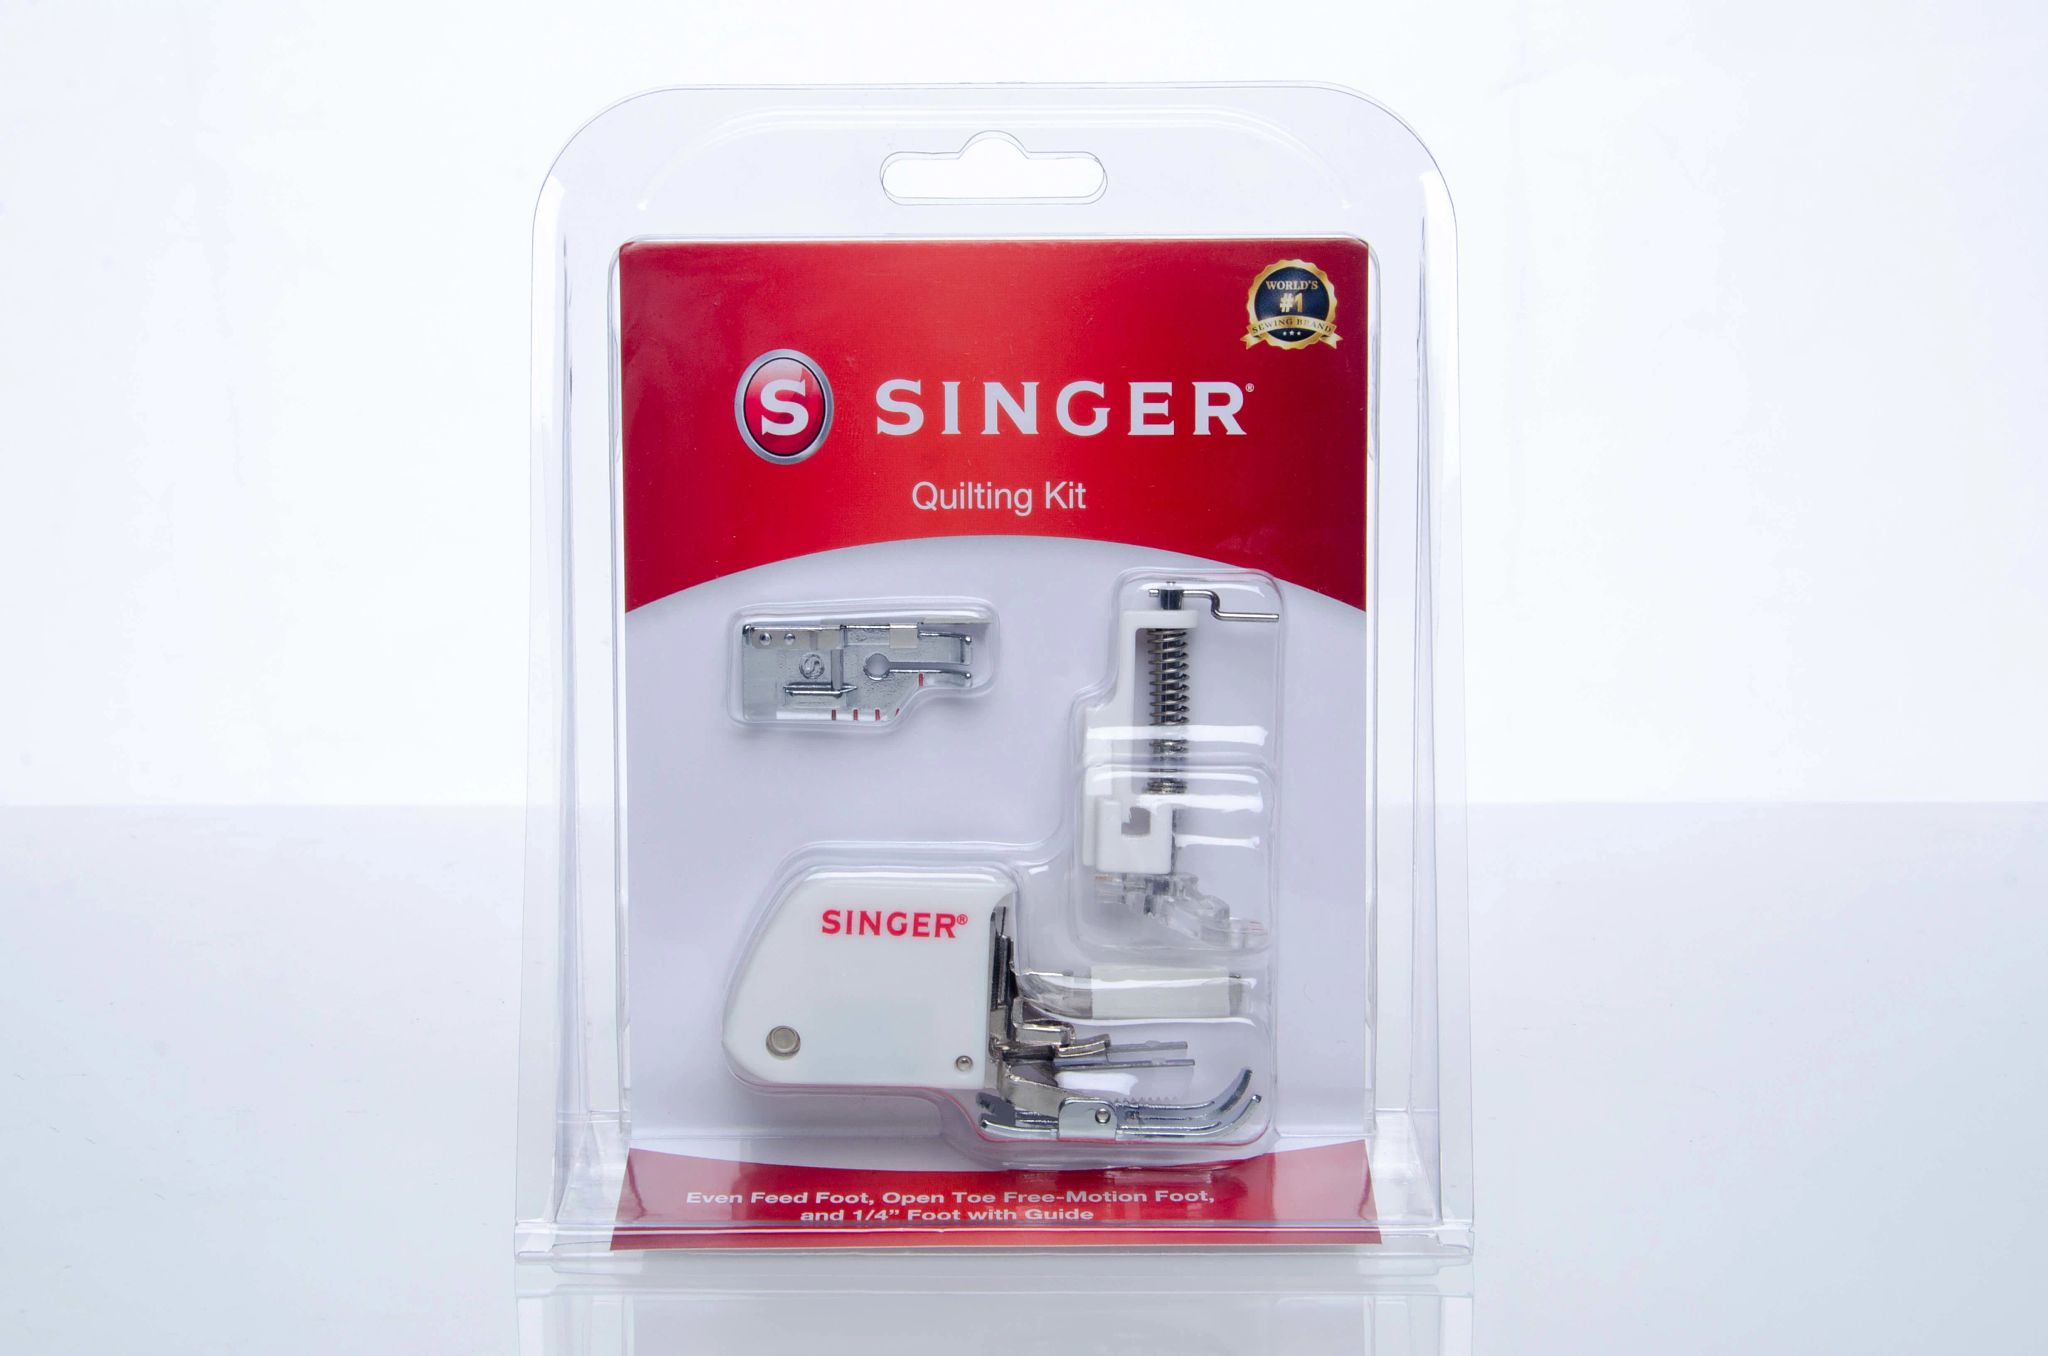 Singer Sewing Kit & Reviews